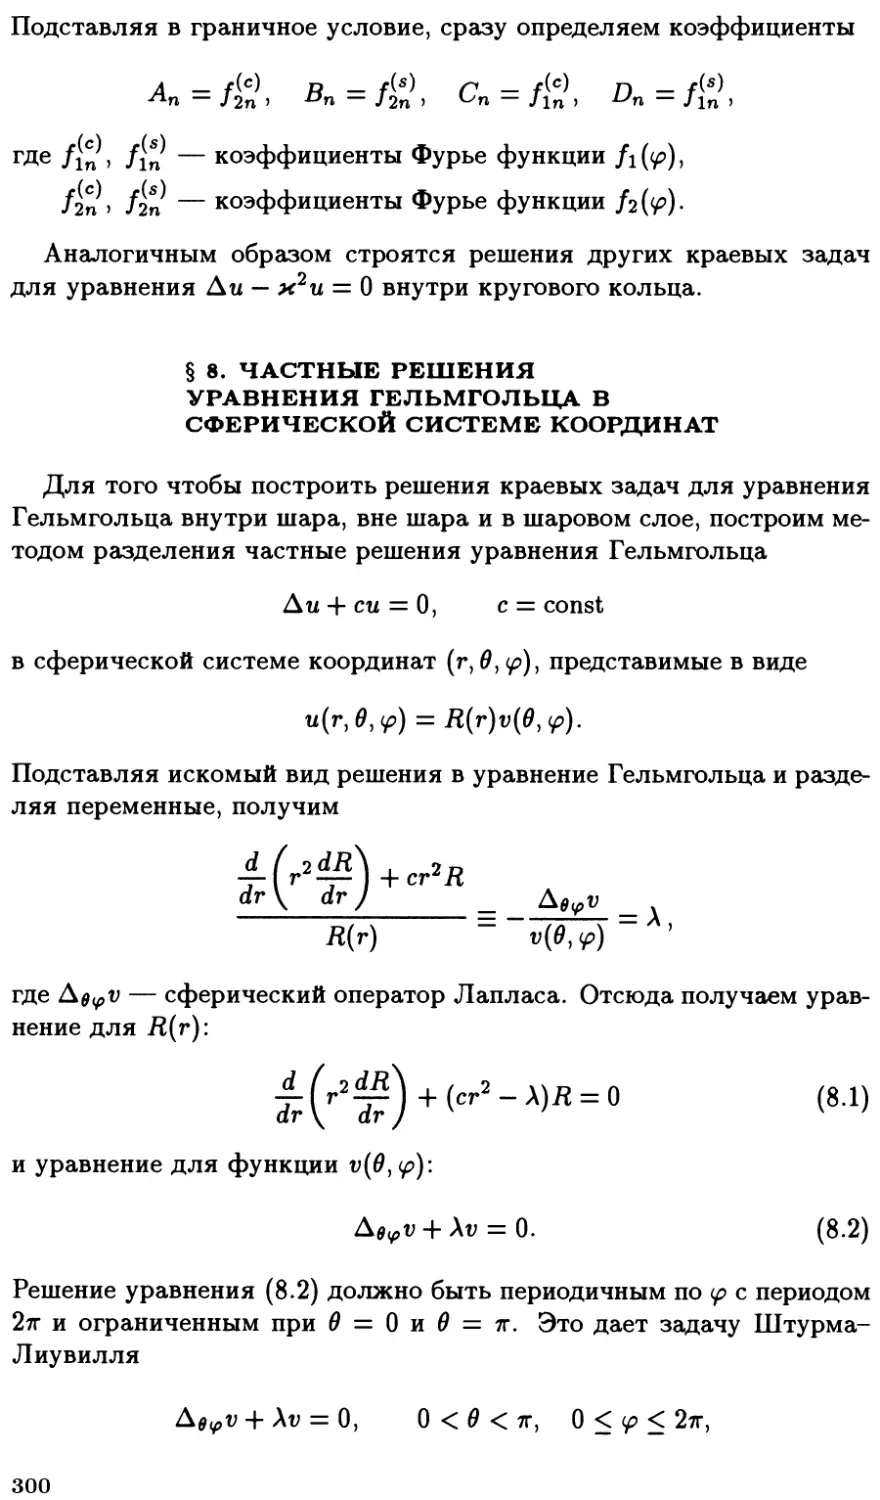 §8. Частные решения уравнения Гельмгольца в сферической системе координат